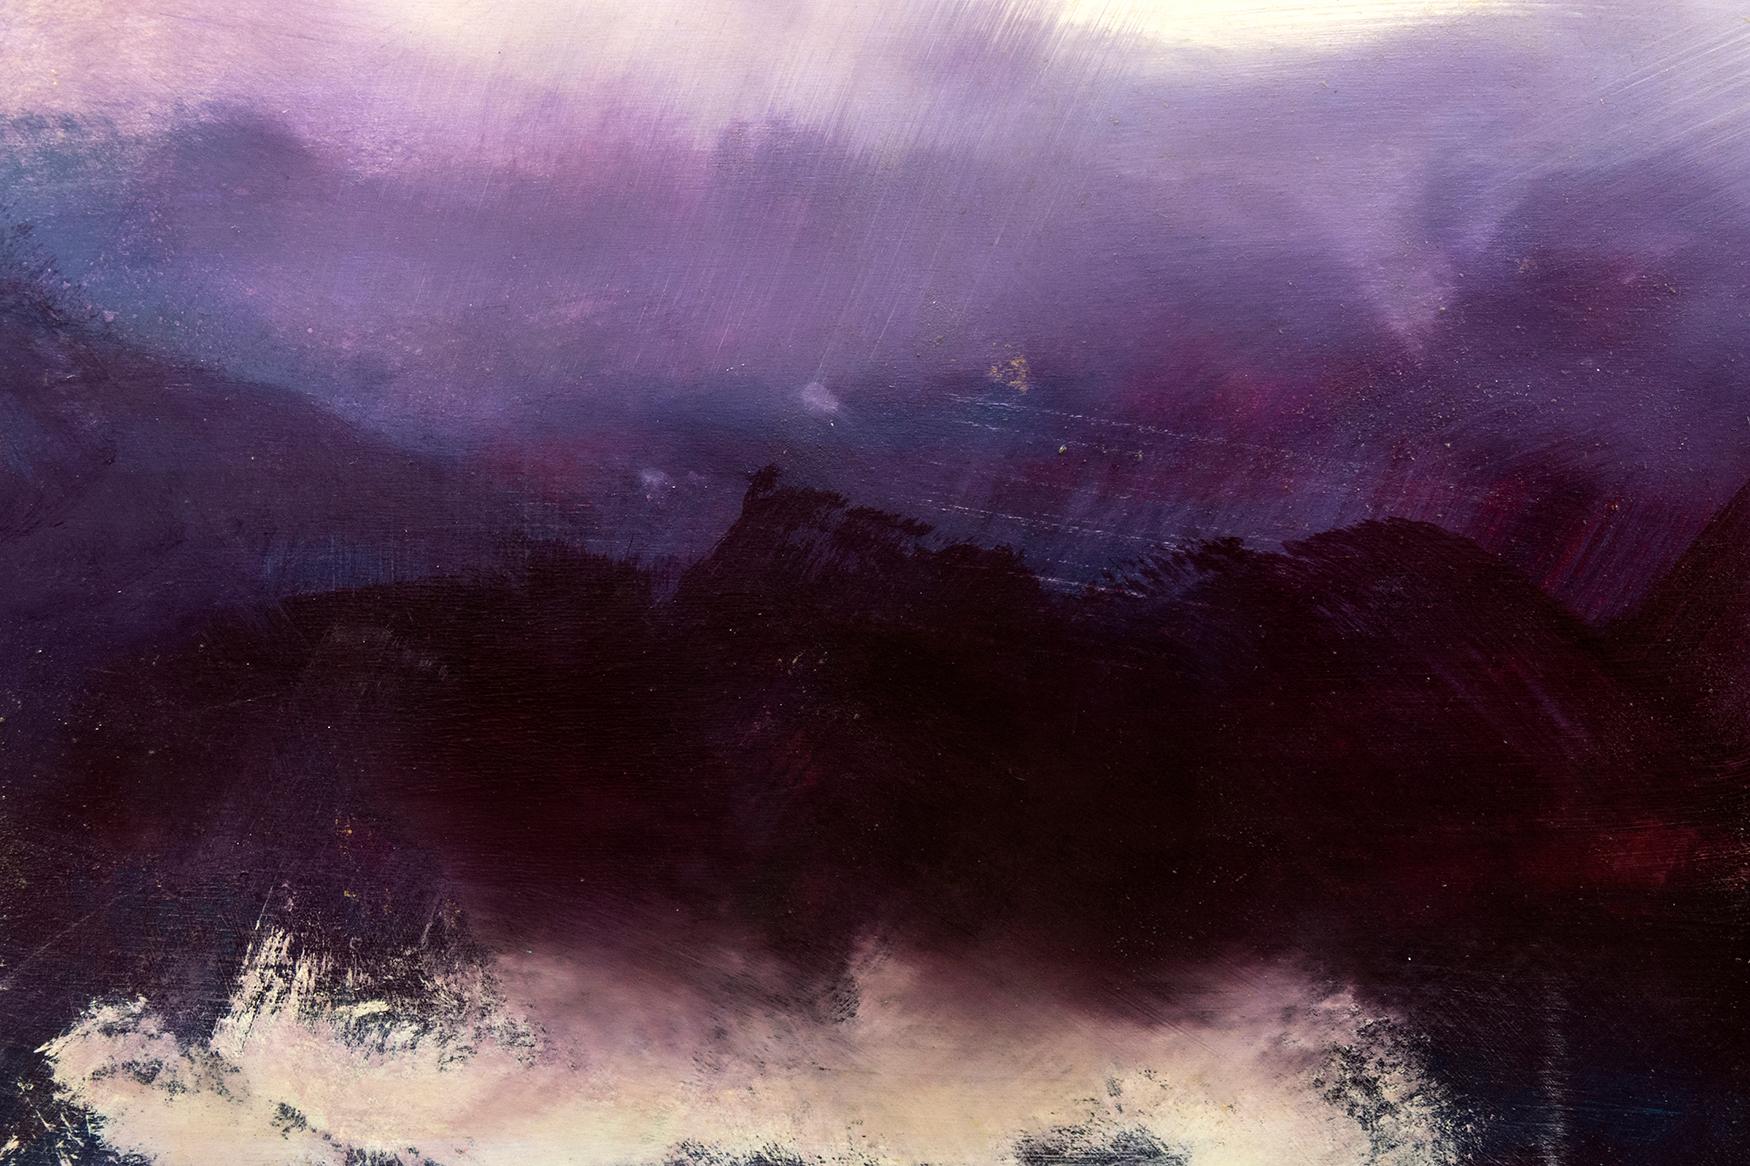 Des nuages sombres à l'horizon orageux rencontrent un ciel violet dans ce diptyque émouvant de Jay Hodgins. Des couches de couleurs curatives recouvertes d'une résine brillante créent de la profondeur et de la lumière dans cette peinture